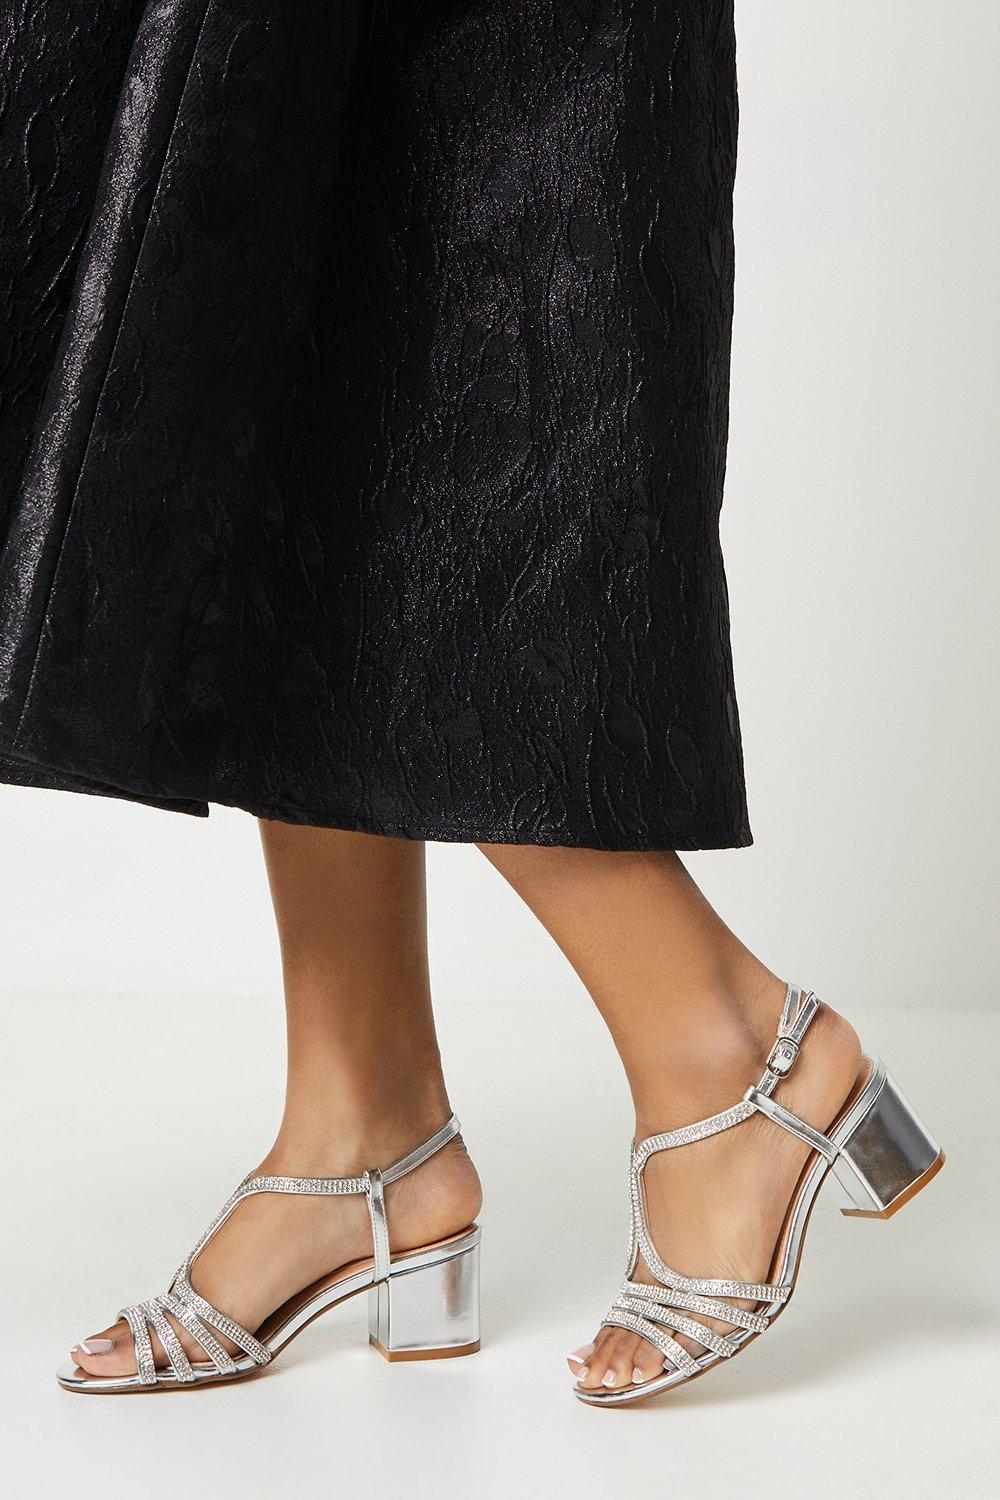 Womens Good For The Sole: Ellie Diamante Medium Block Heel Sandals